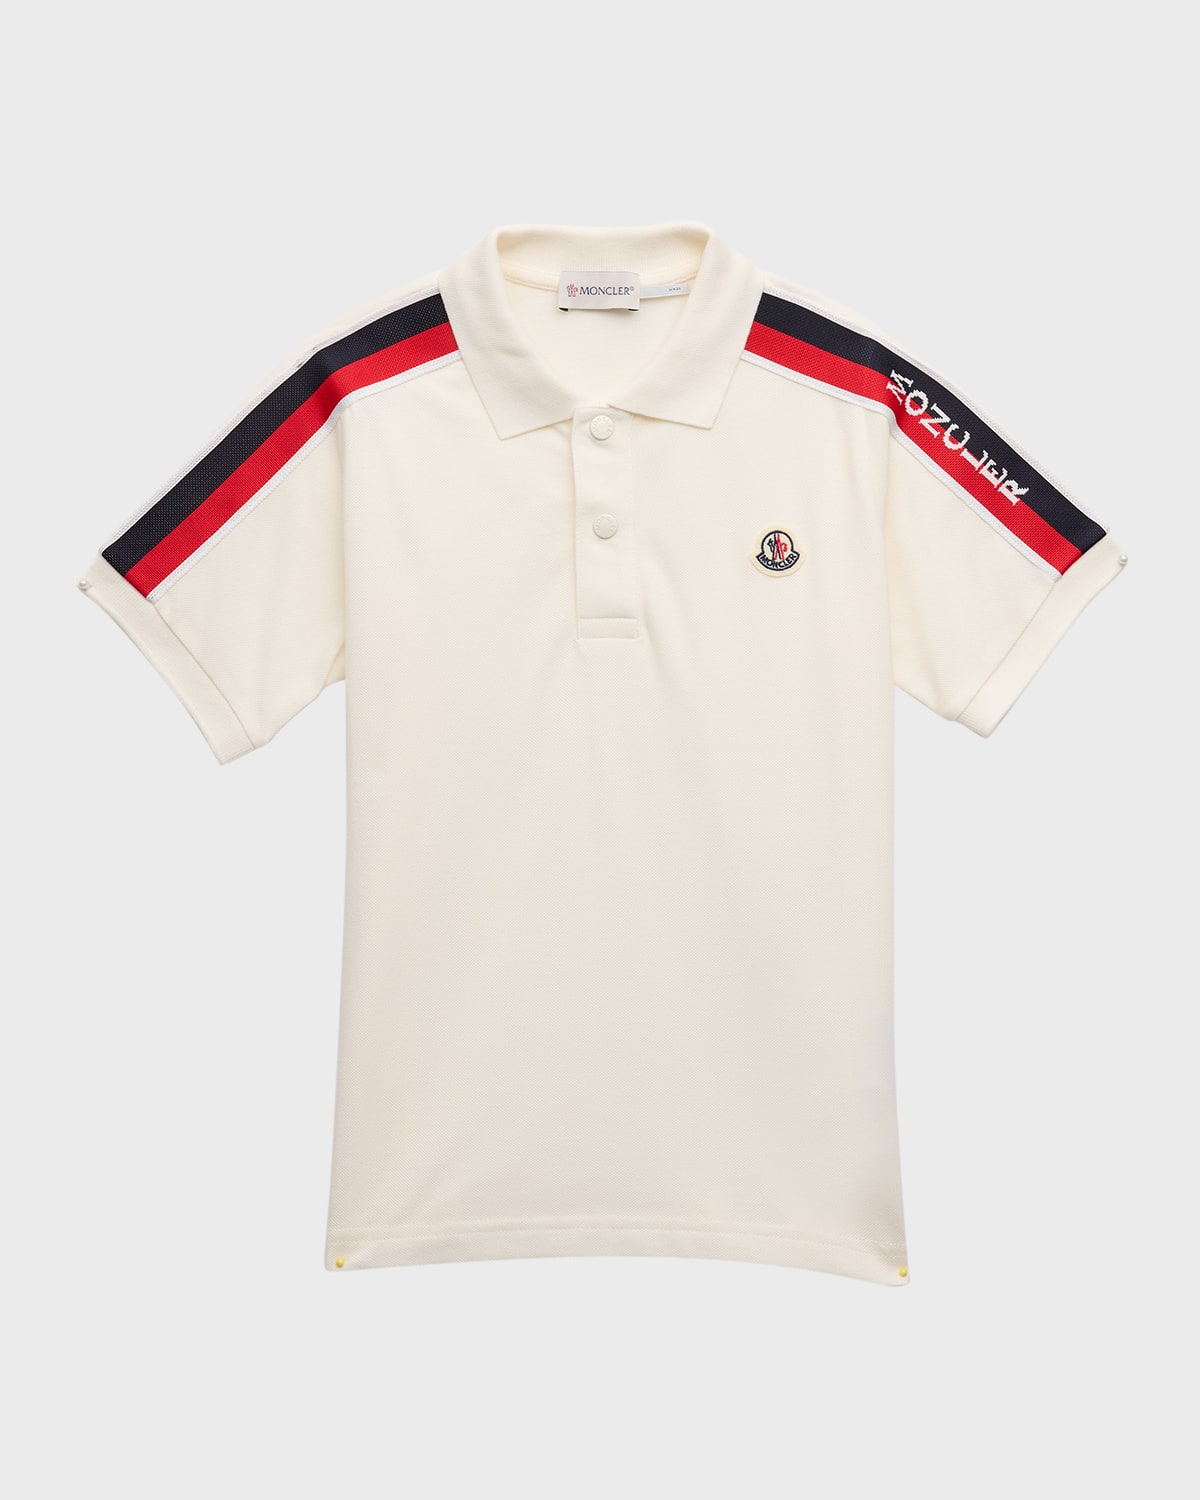 Moncler Kids' Boy's Polo Shirt W/ Tri Stripes & Logo In White